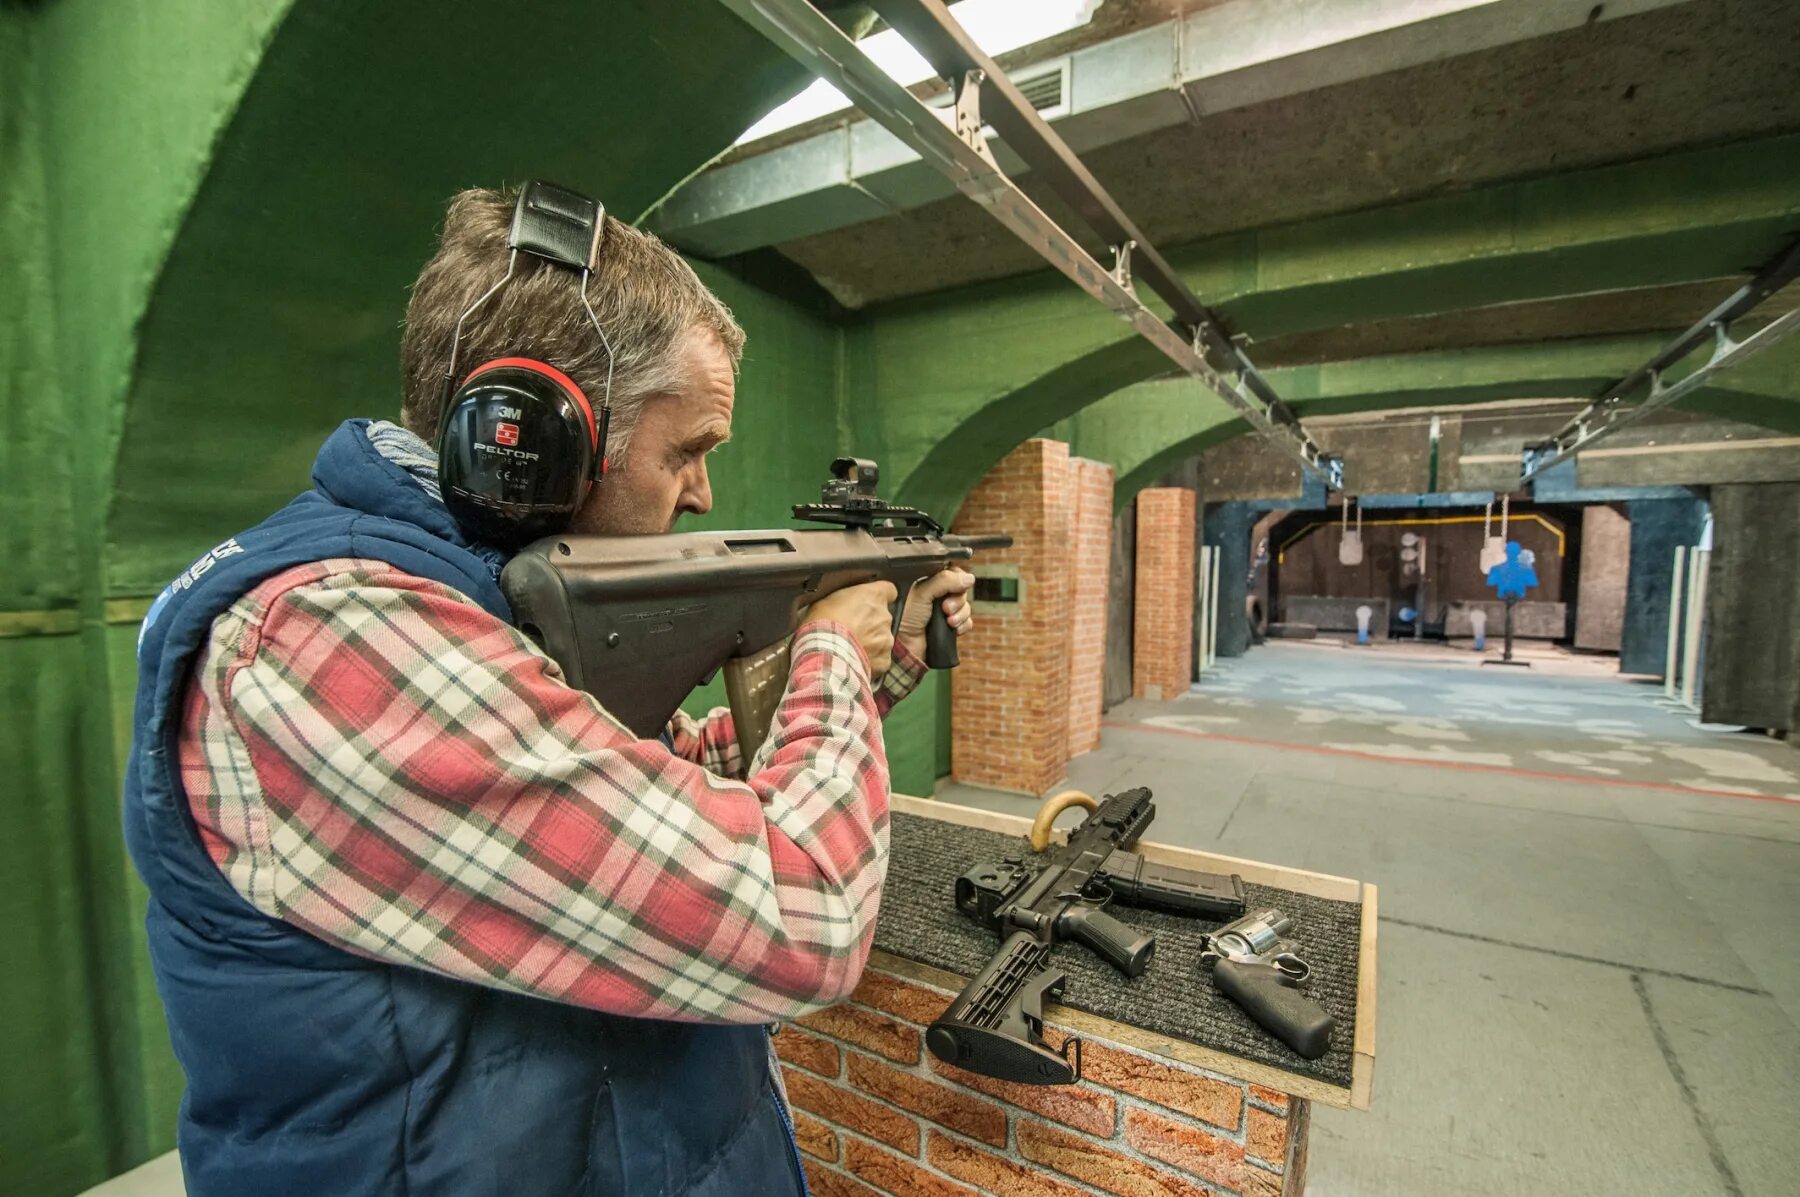 Shooting range. Shooting range Москва. Тир background. Shooting range Lab Москва. Shooting in moscow